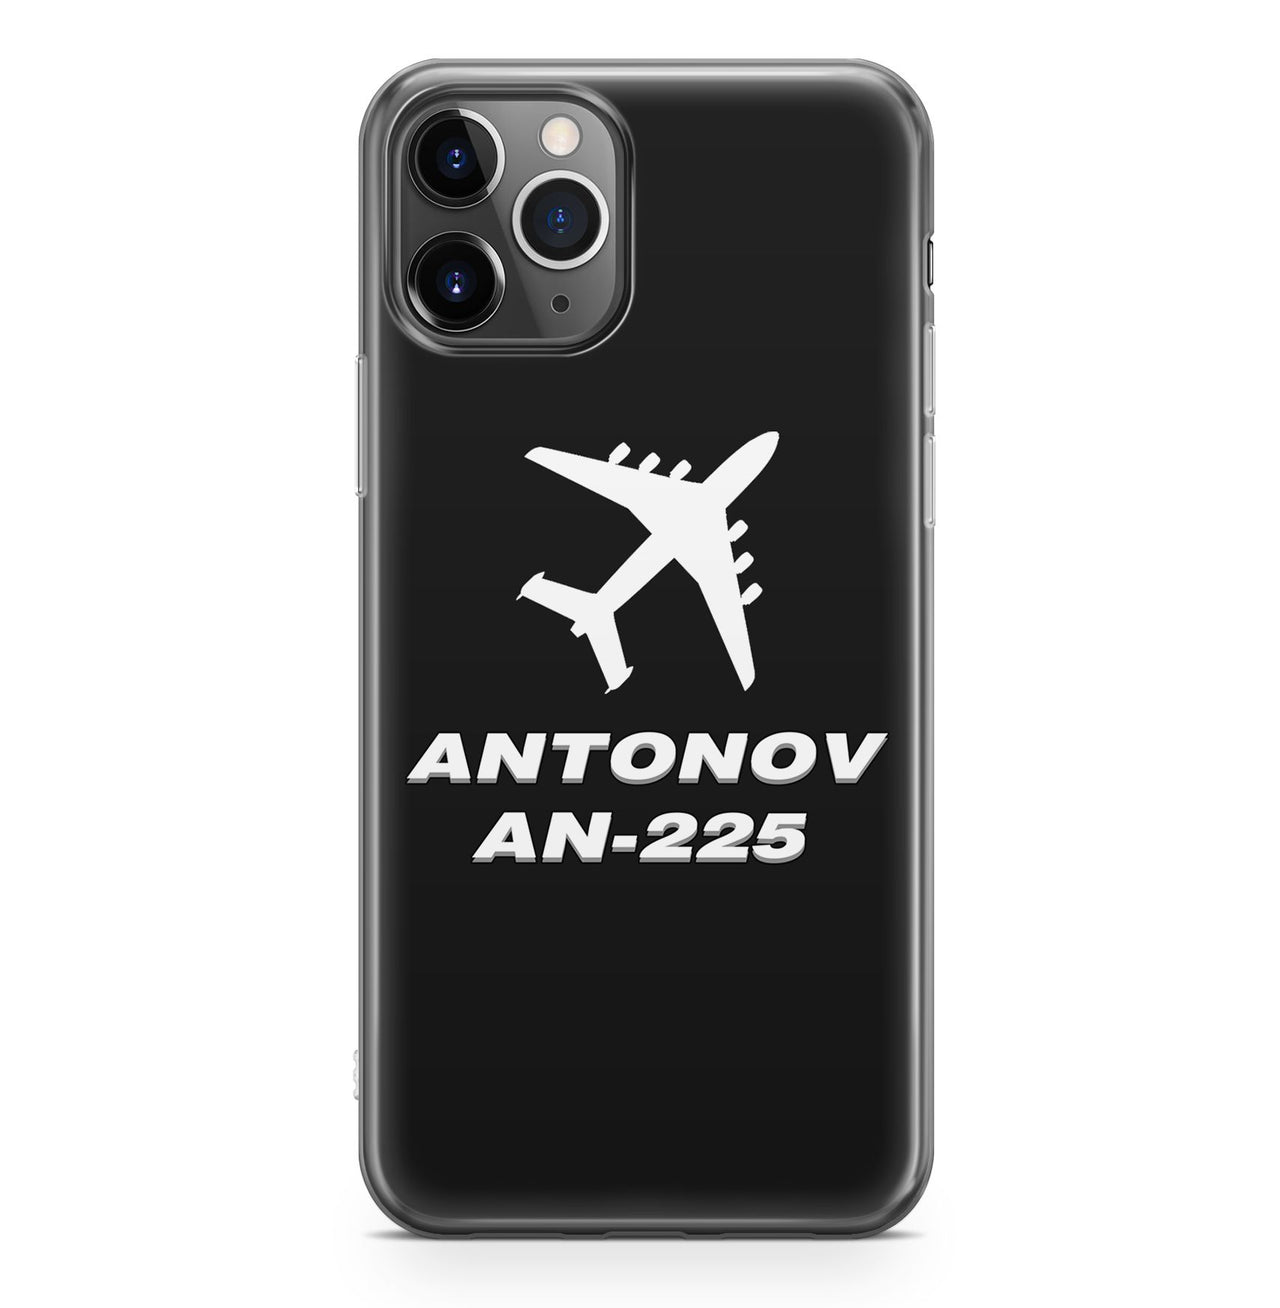 Antonov AN-225 (28) Designed iPhone Cases